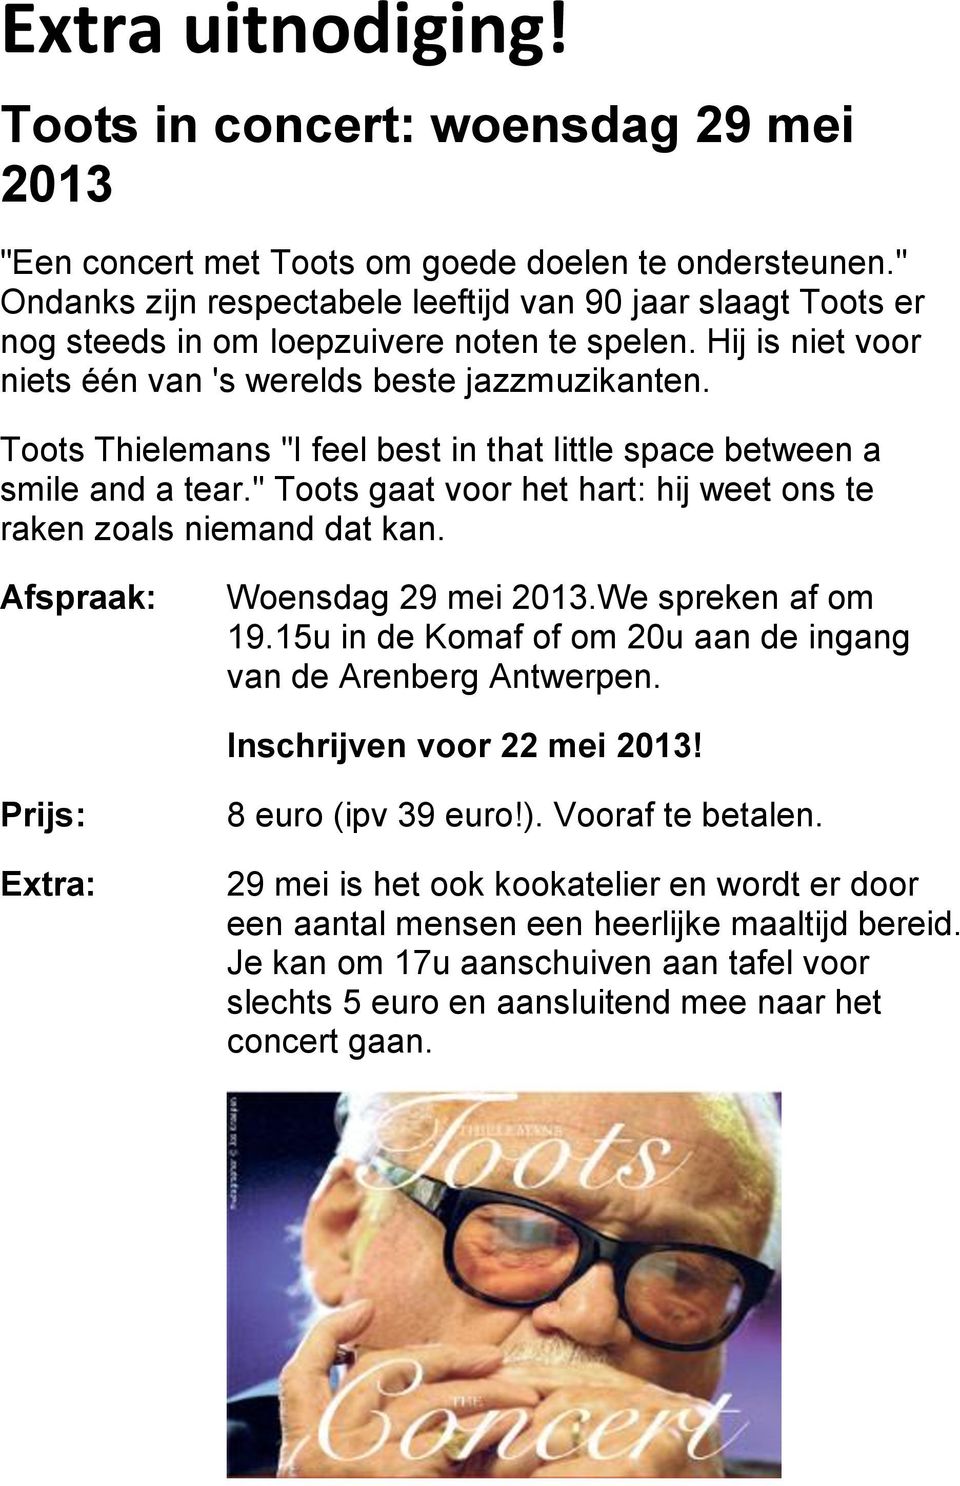 Toots Thielemans "I feel best in that little space between a smile and a tear." Toots gaat voor het hart: hij weet ons te raken zoals niemand dat kan. Afspraak: Woensdag 29 mei 2013.